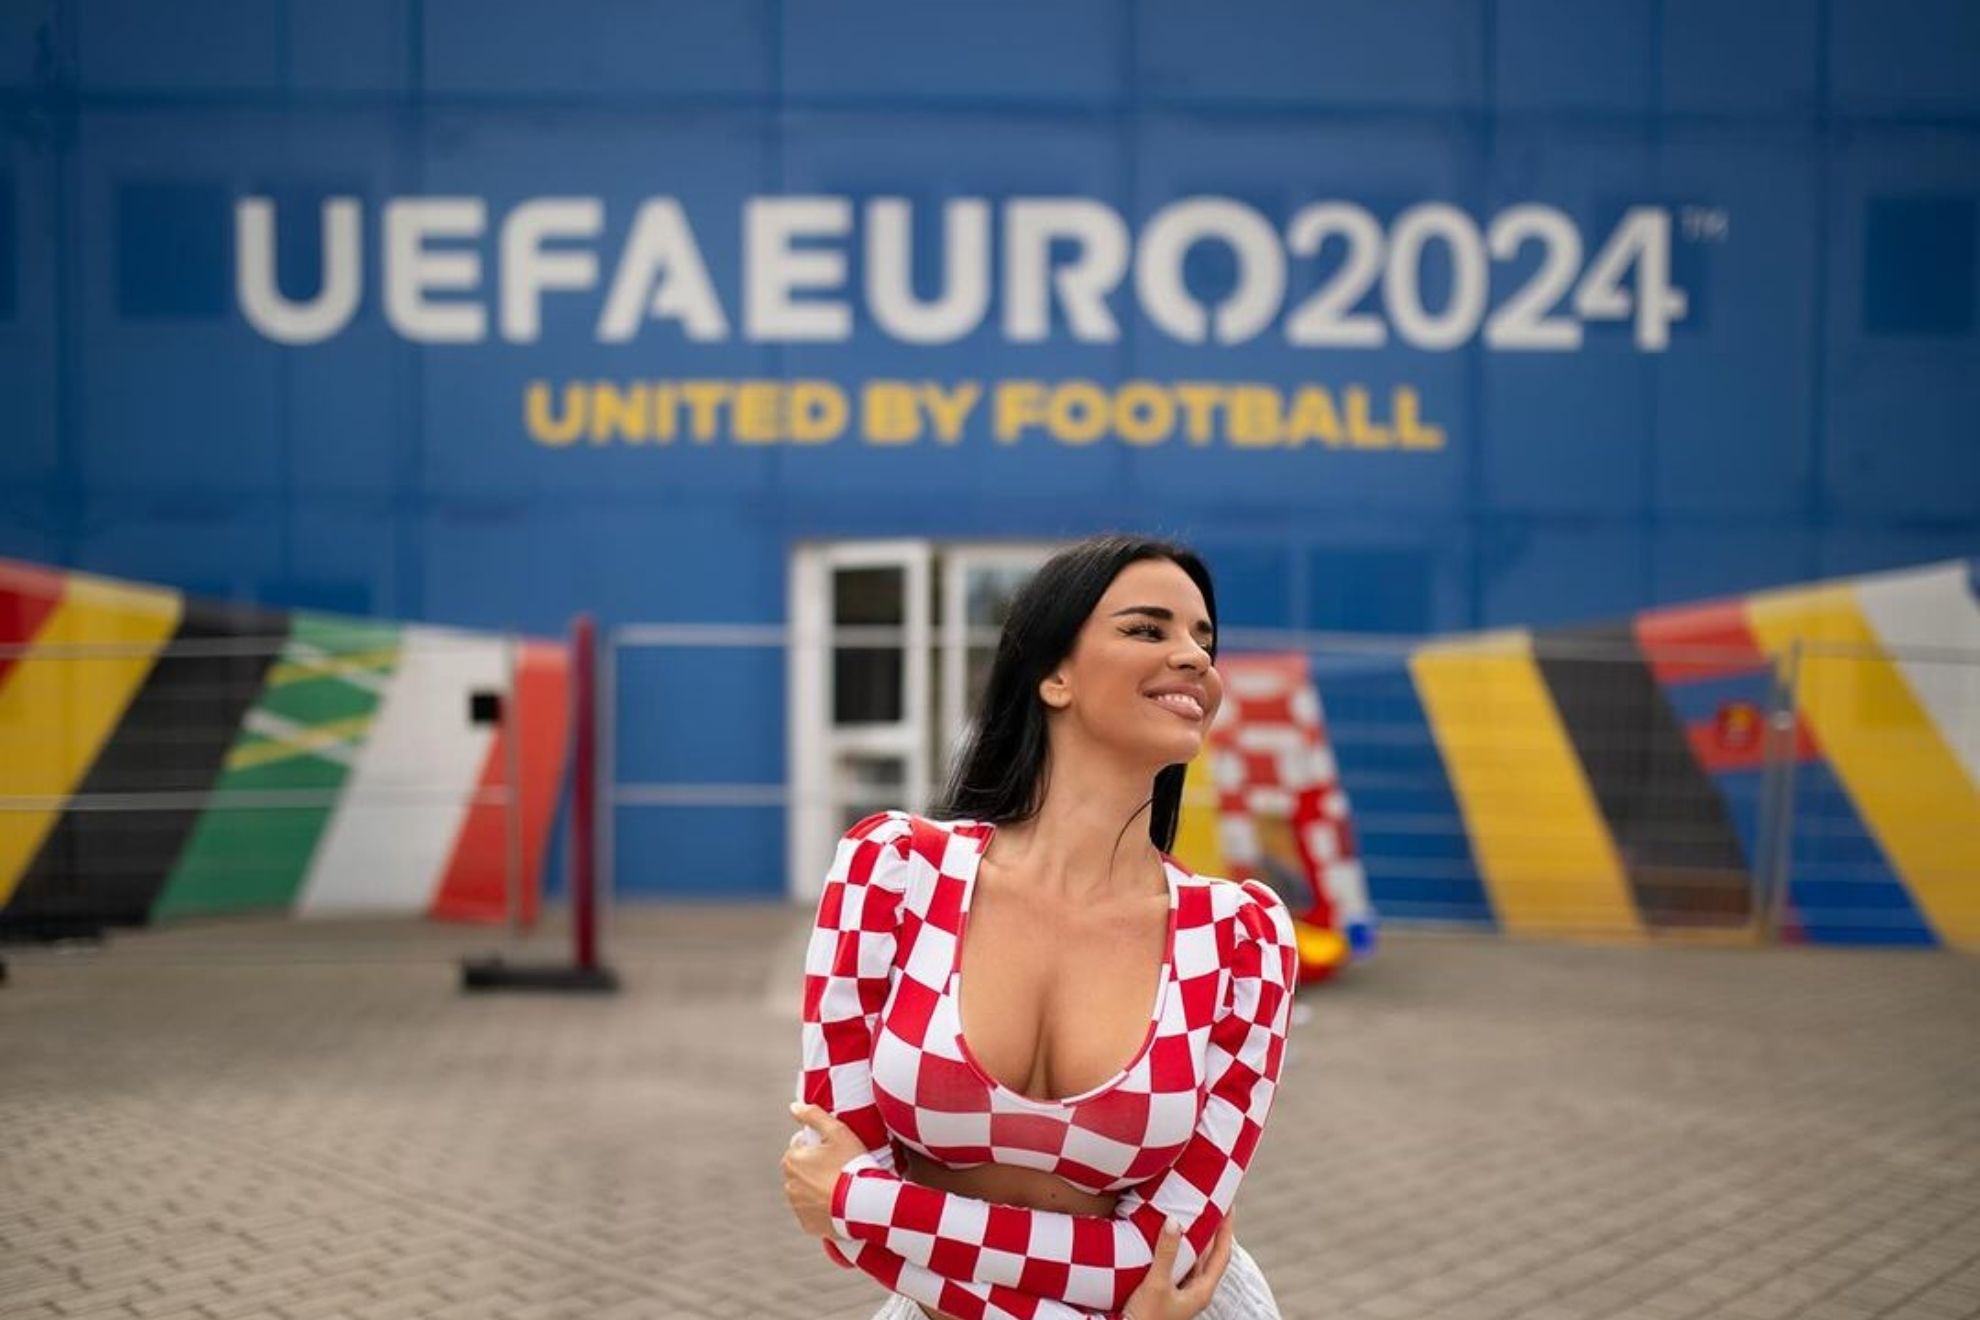 La presencia de Ivana Knoll, la aficionada croata que destaca en esta Eurocopa